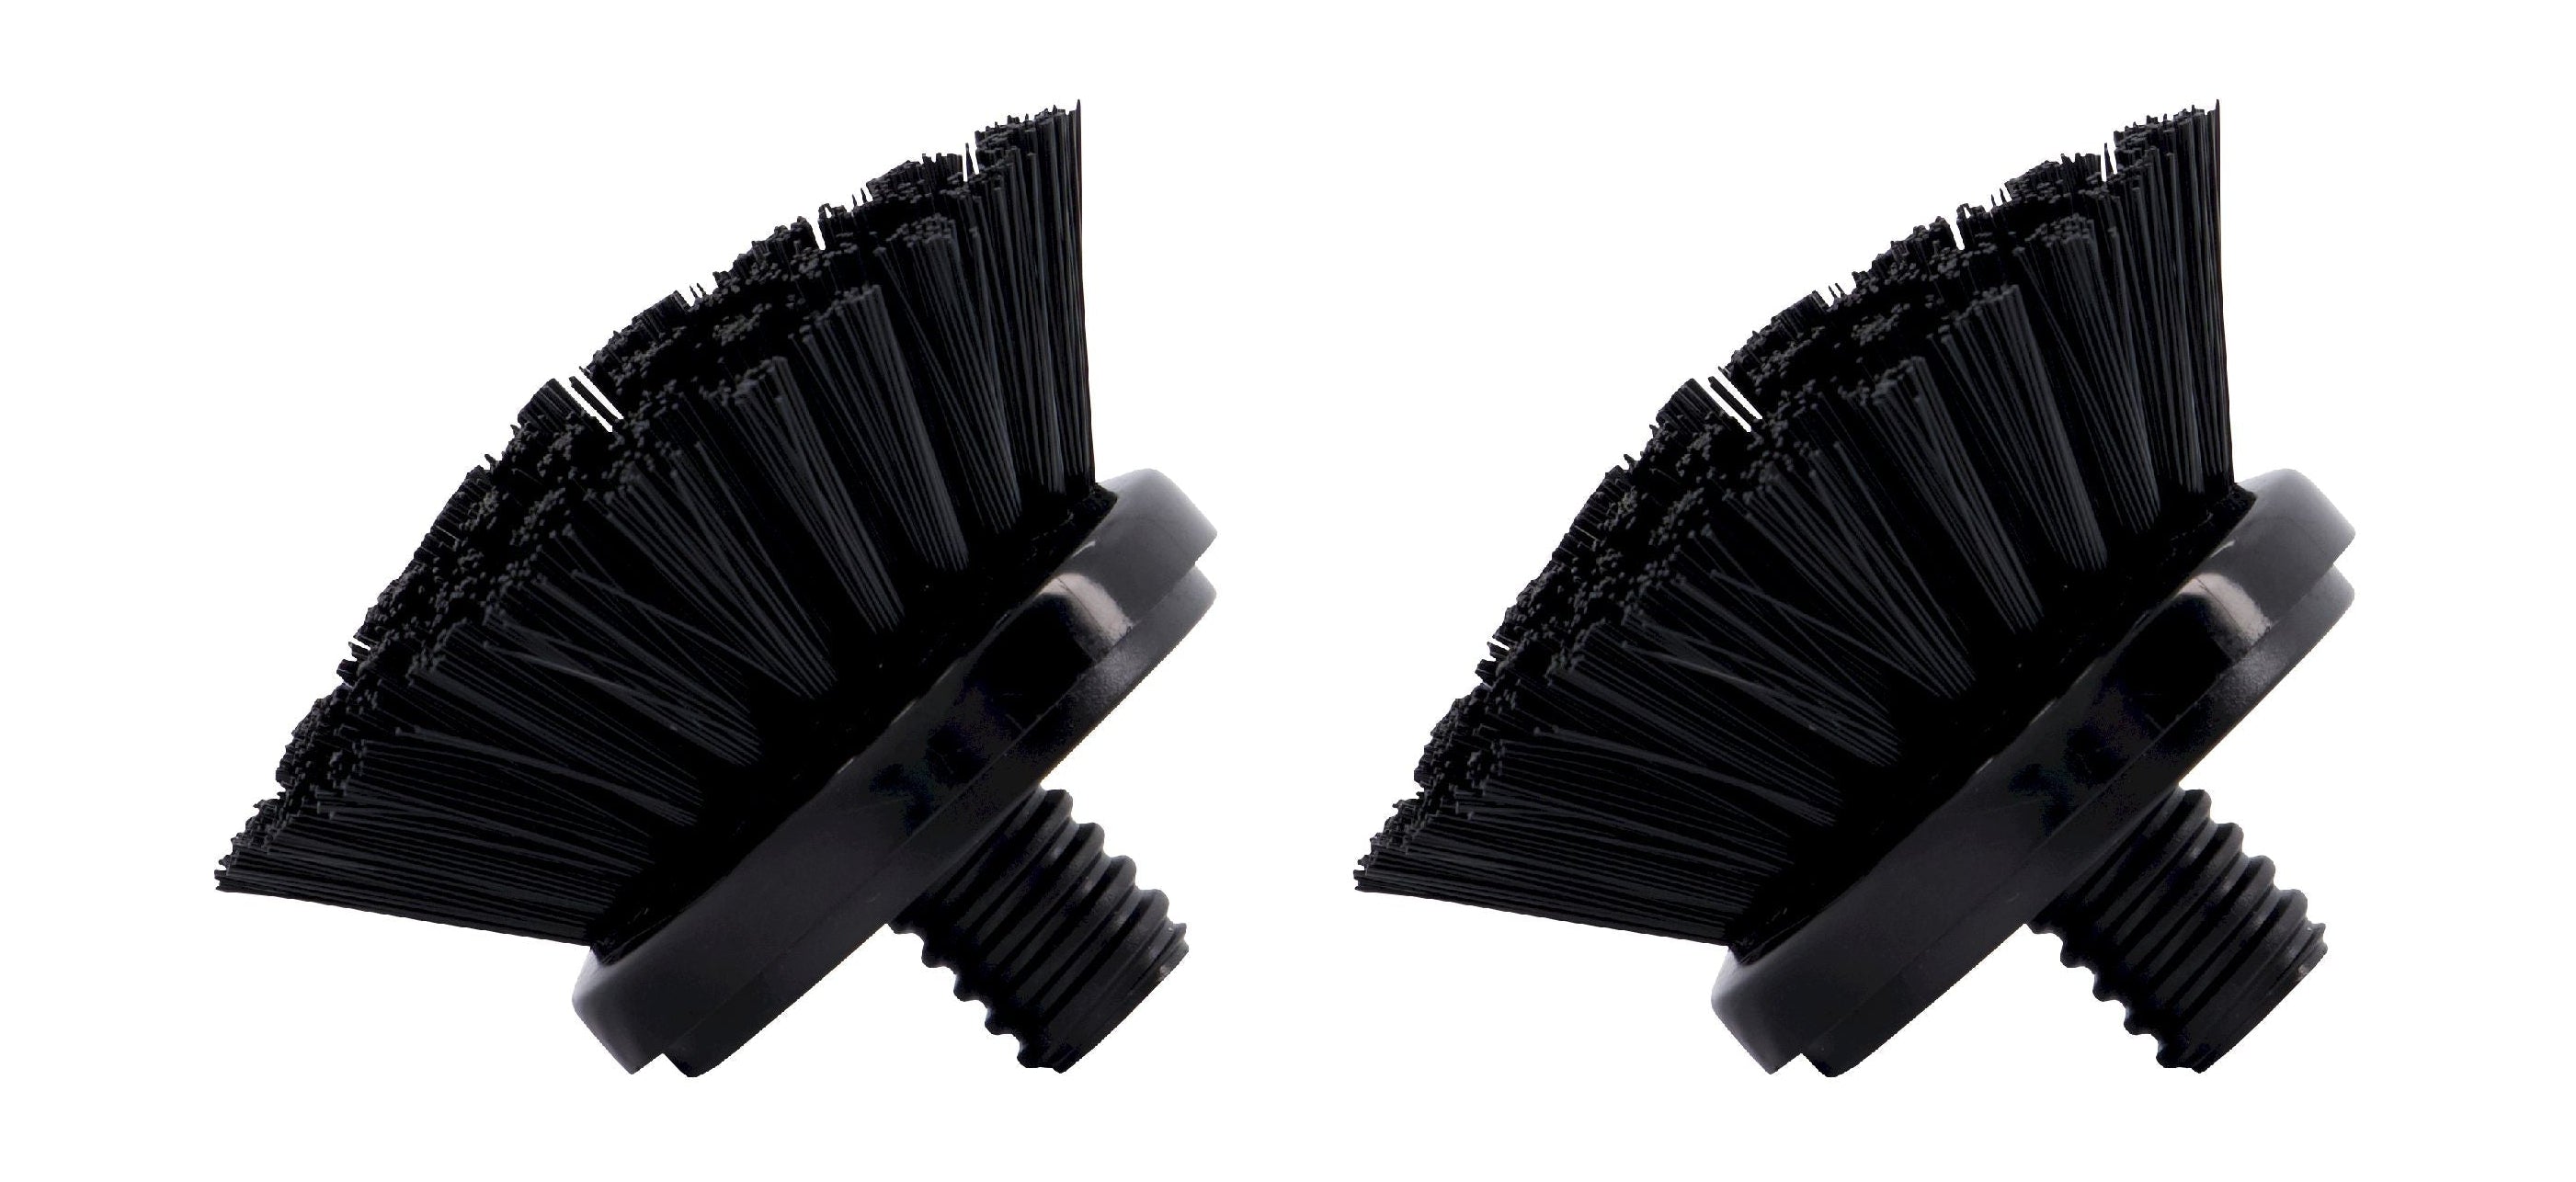 Meraki erstatning børstehoveder sæt af 2, sort